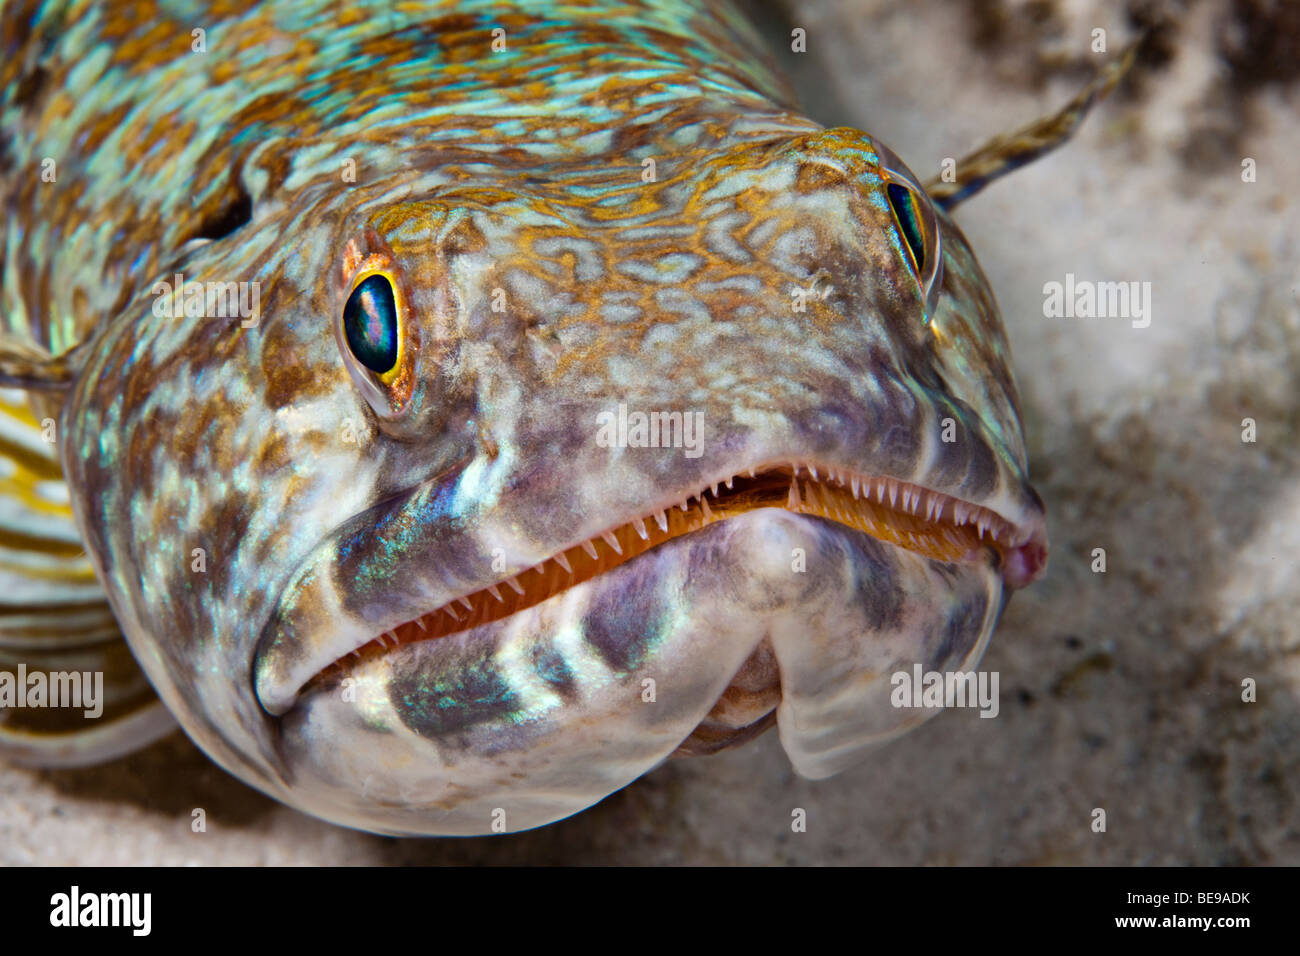 Uno sguardo più da vicino a un lizardfish o sabbia subacqueo, Synodus intermedius, Bonaire, Antille Olandesi, dei Caraibi. Foto Stock